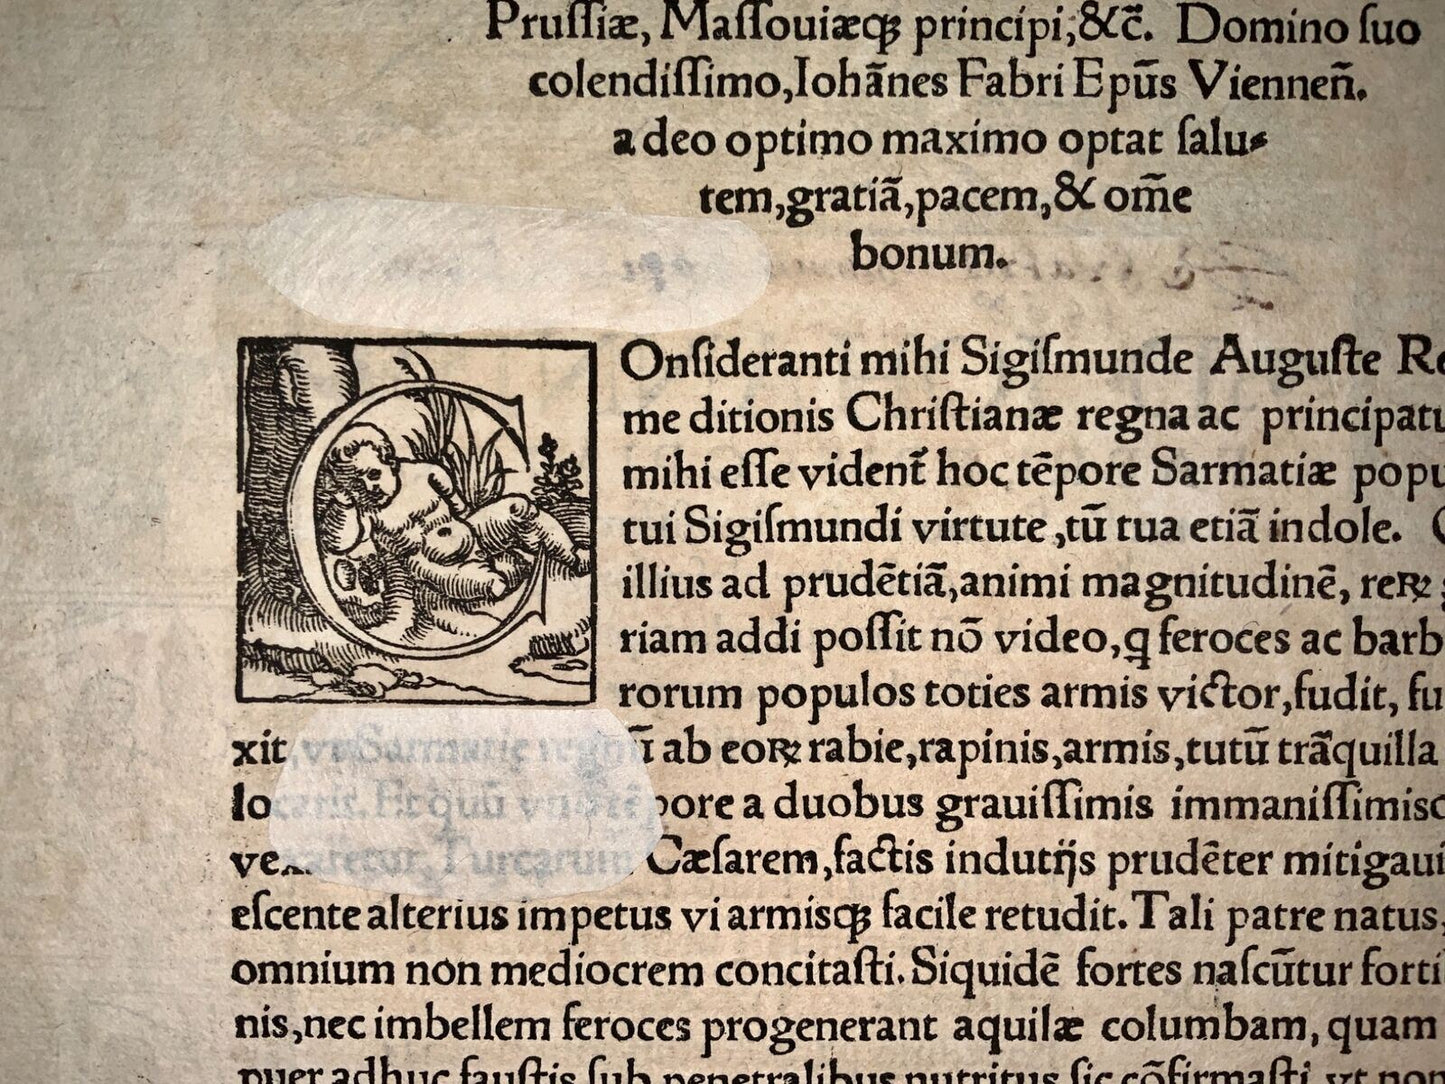 1537 Titolo xilografico, Anton Woensam, bordo xilografico illustrato, Faber, religione